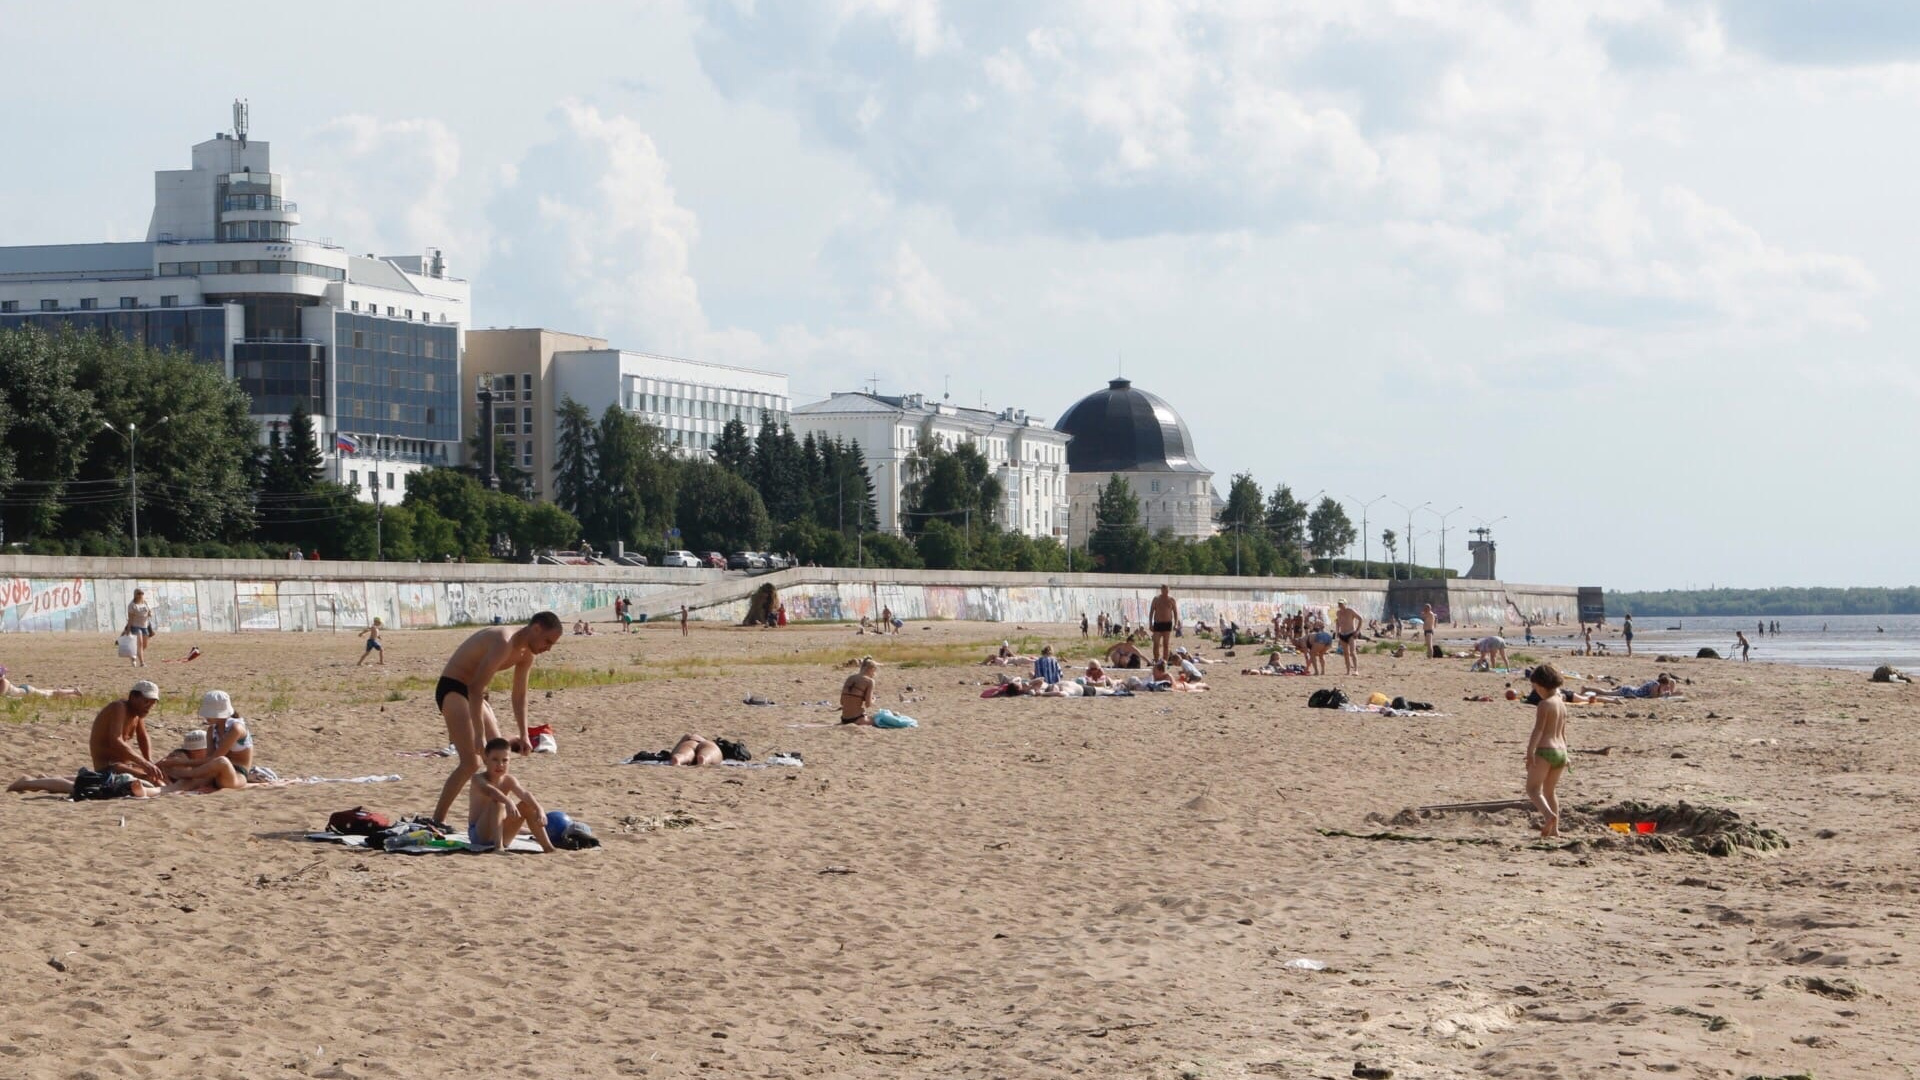 Пляж не благоустроен, но город — курорт! Смотрите, как много горожан загорает у реки в жару